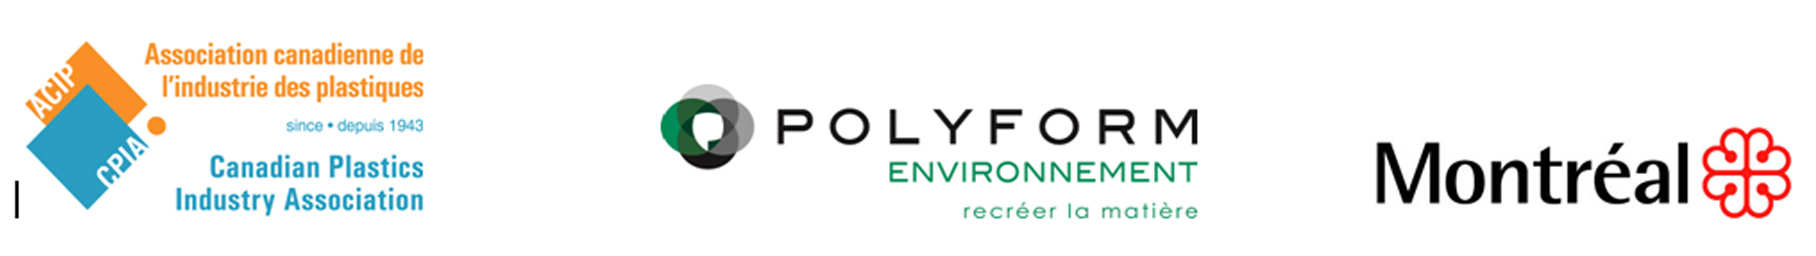 Mtl_logos_CPIA_Polyform_Montreal